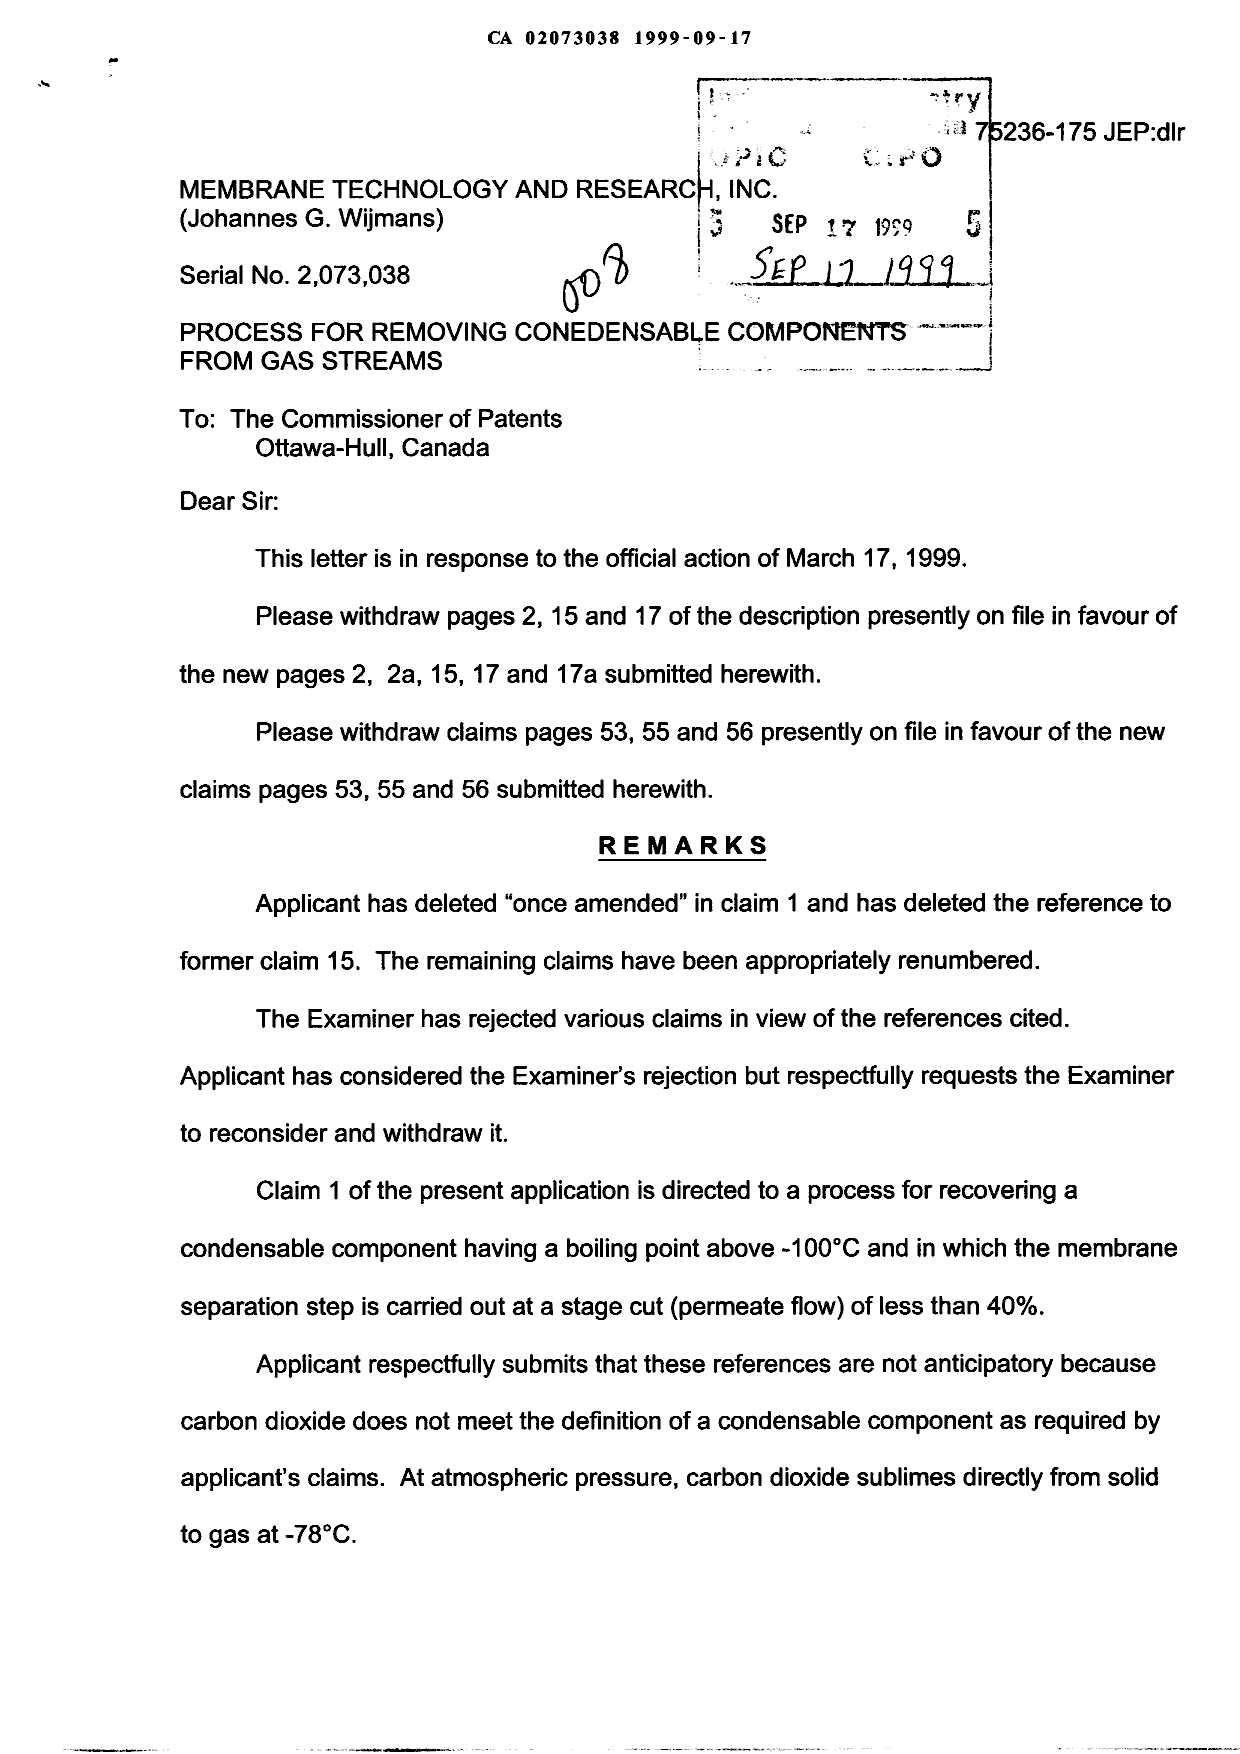 Document de brevet canadien 2073038. Poursuite-Amendment 19990917. Image 1 de 12